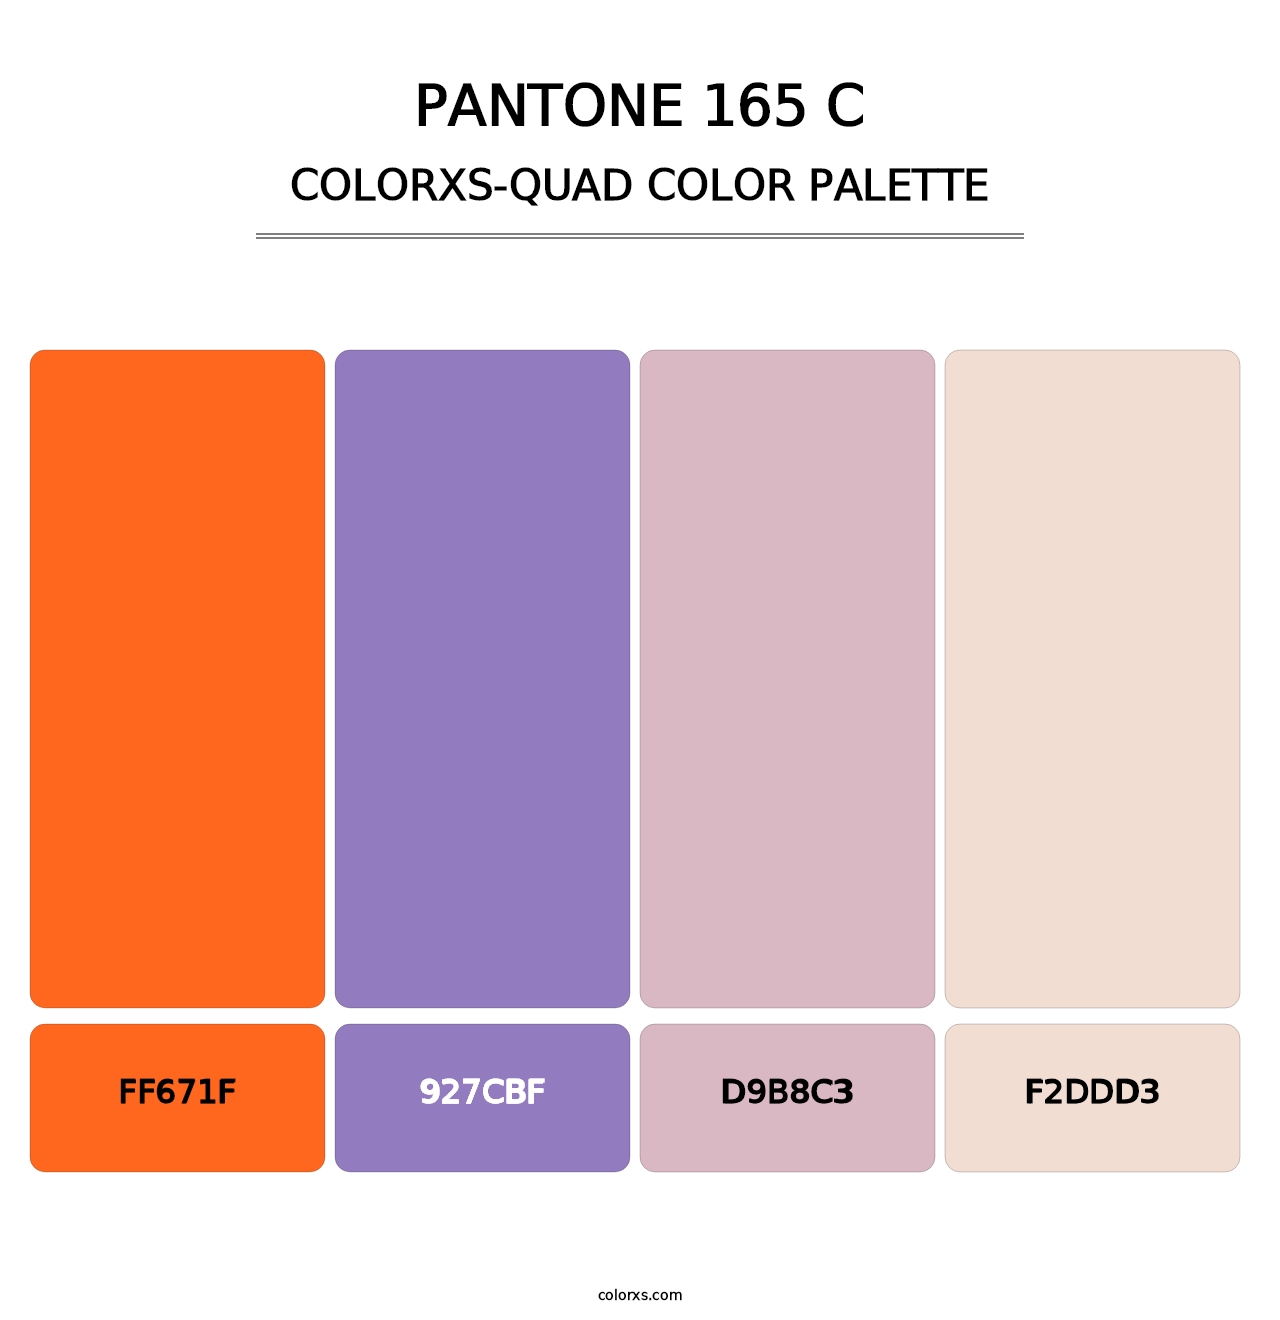 PANTONE 165 C - Colorxs Quad Palette